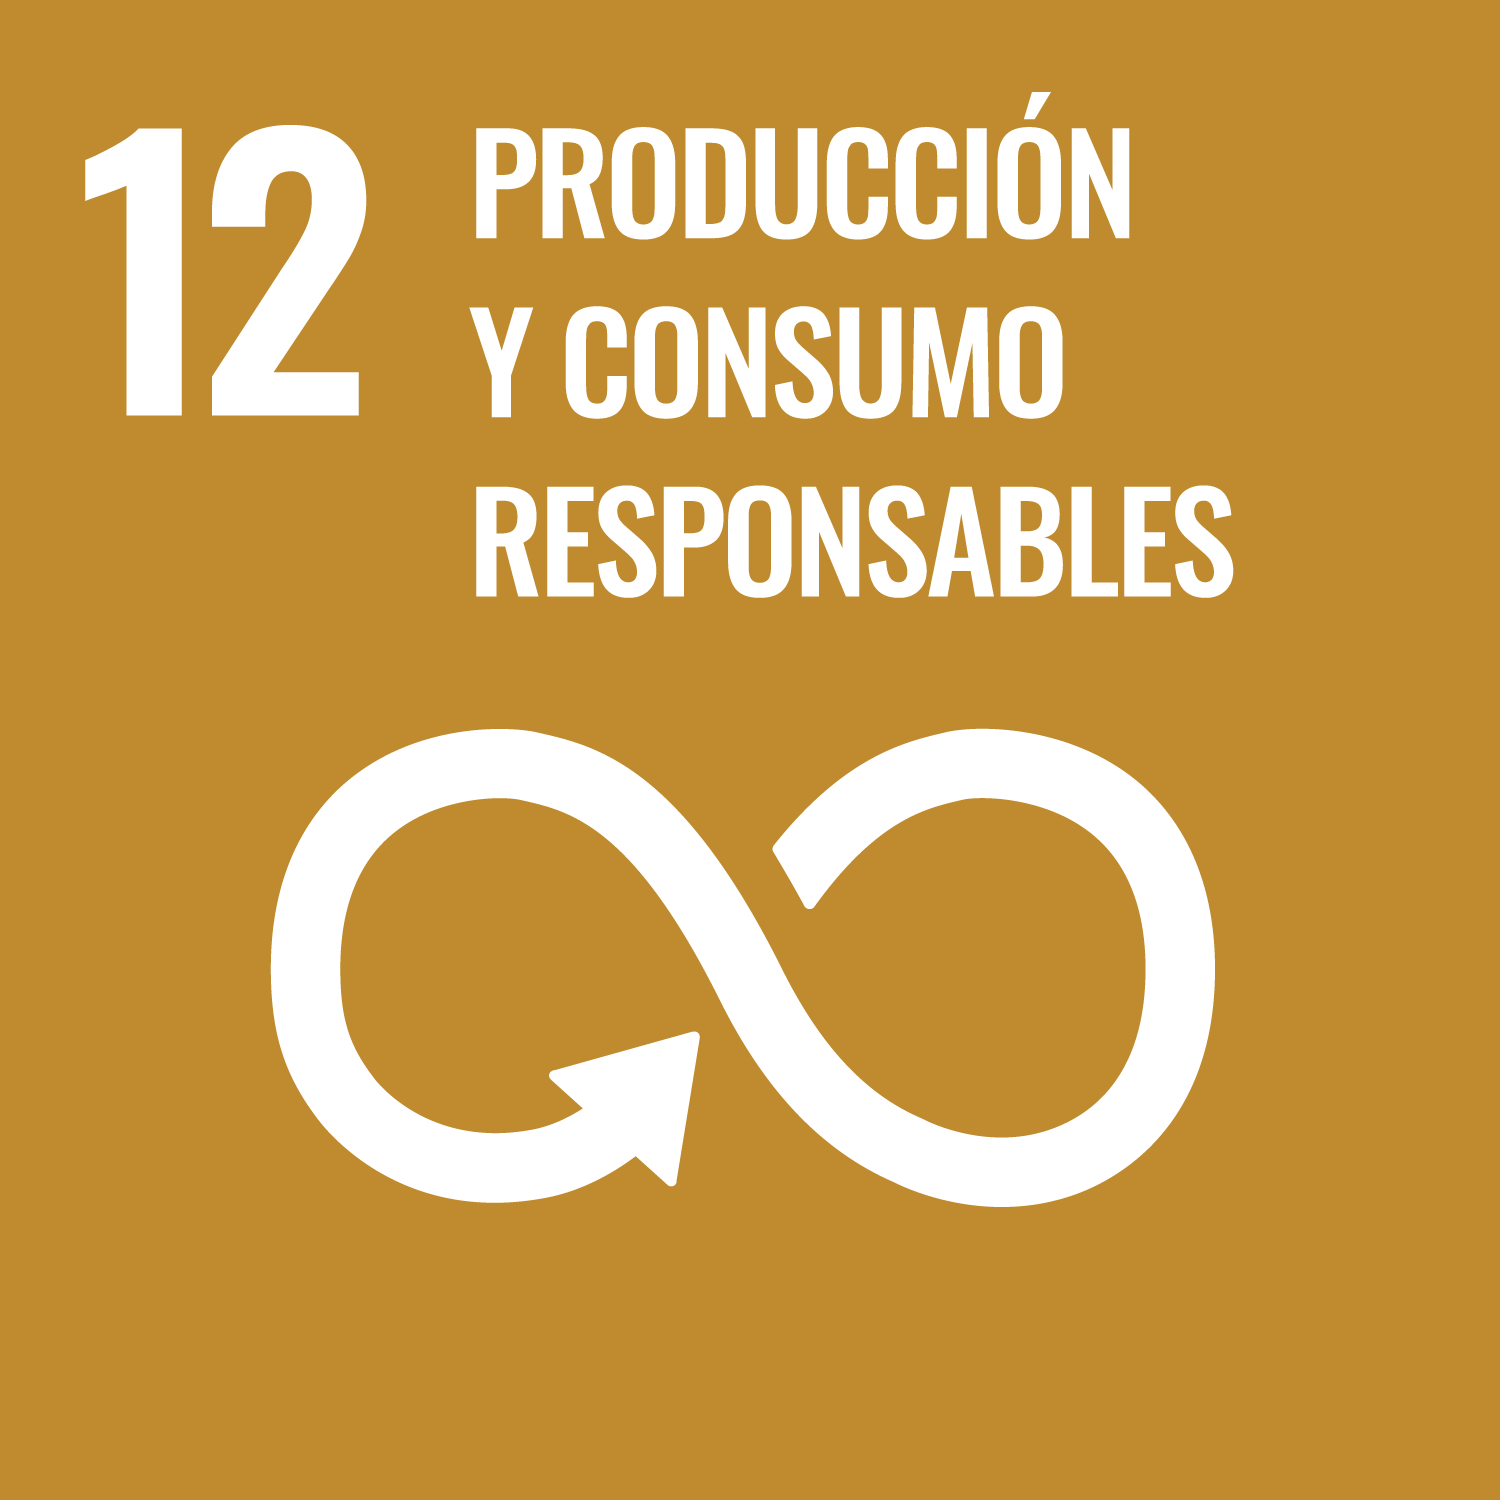 12. Garantizar modalidades de consumo y producción sostenibles.